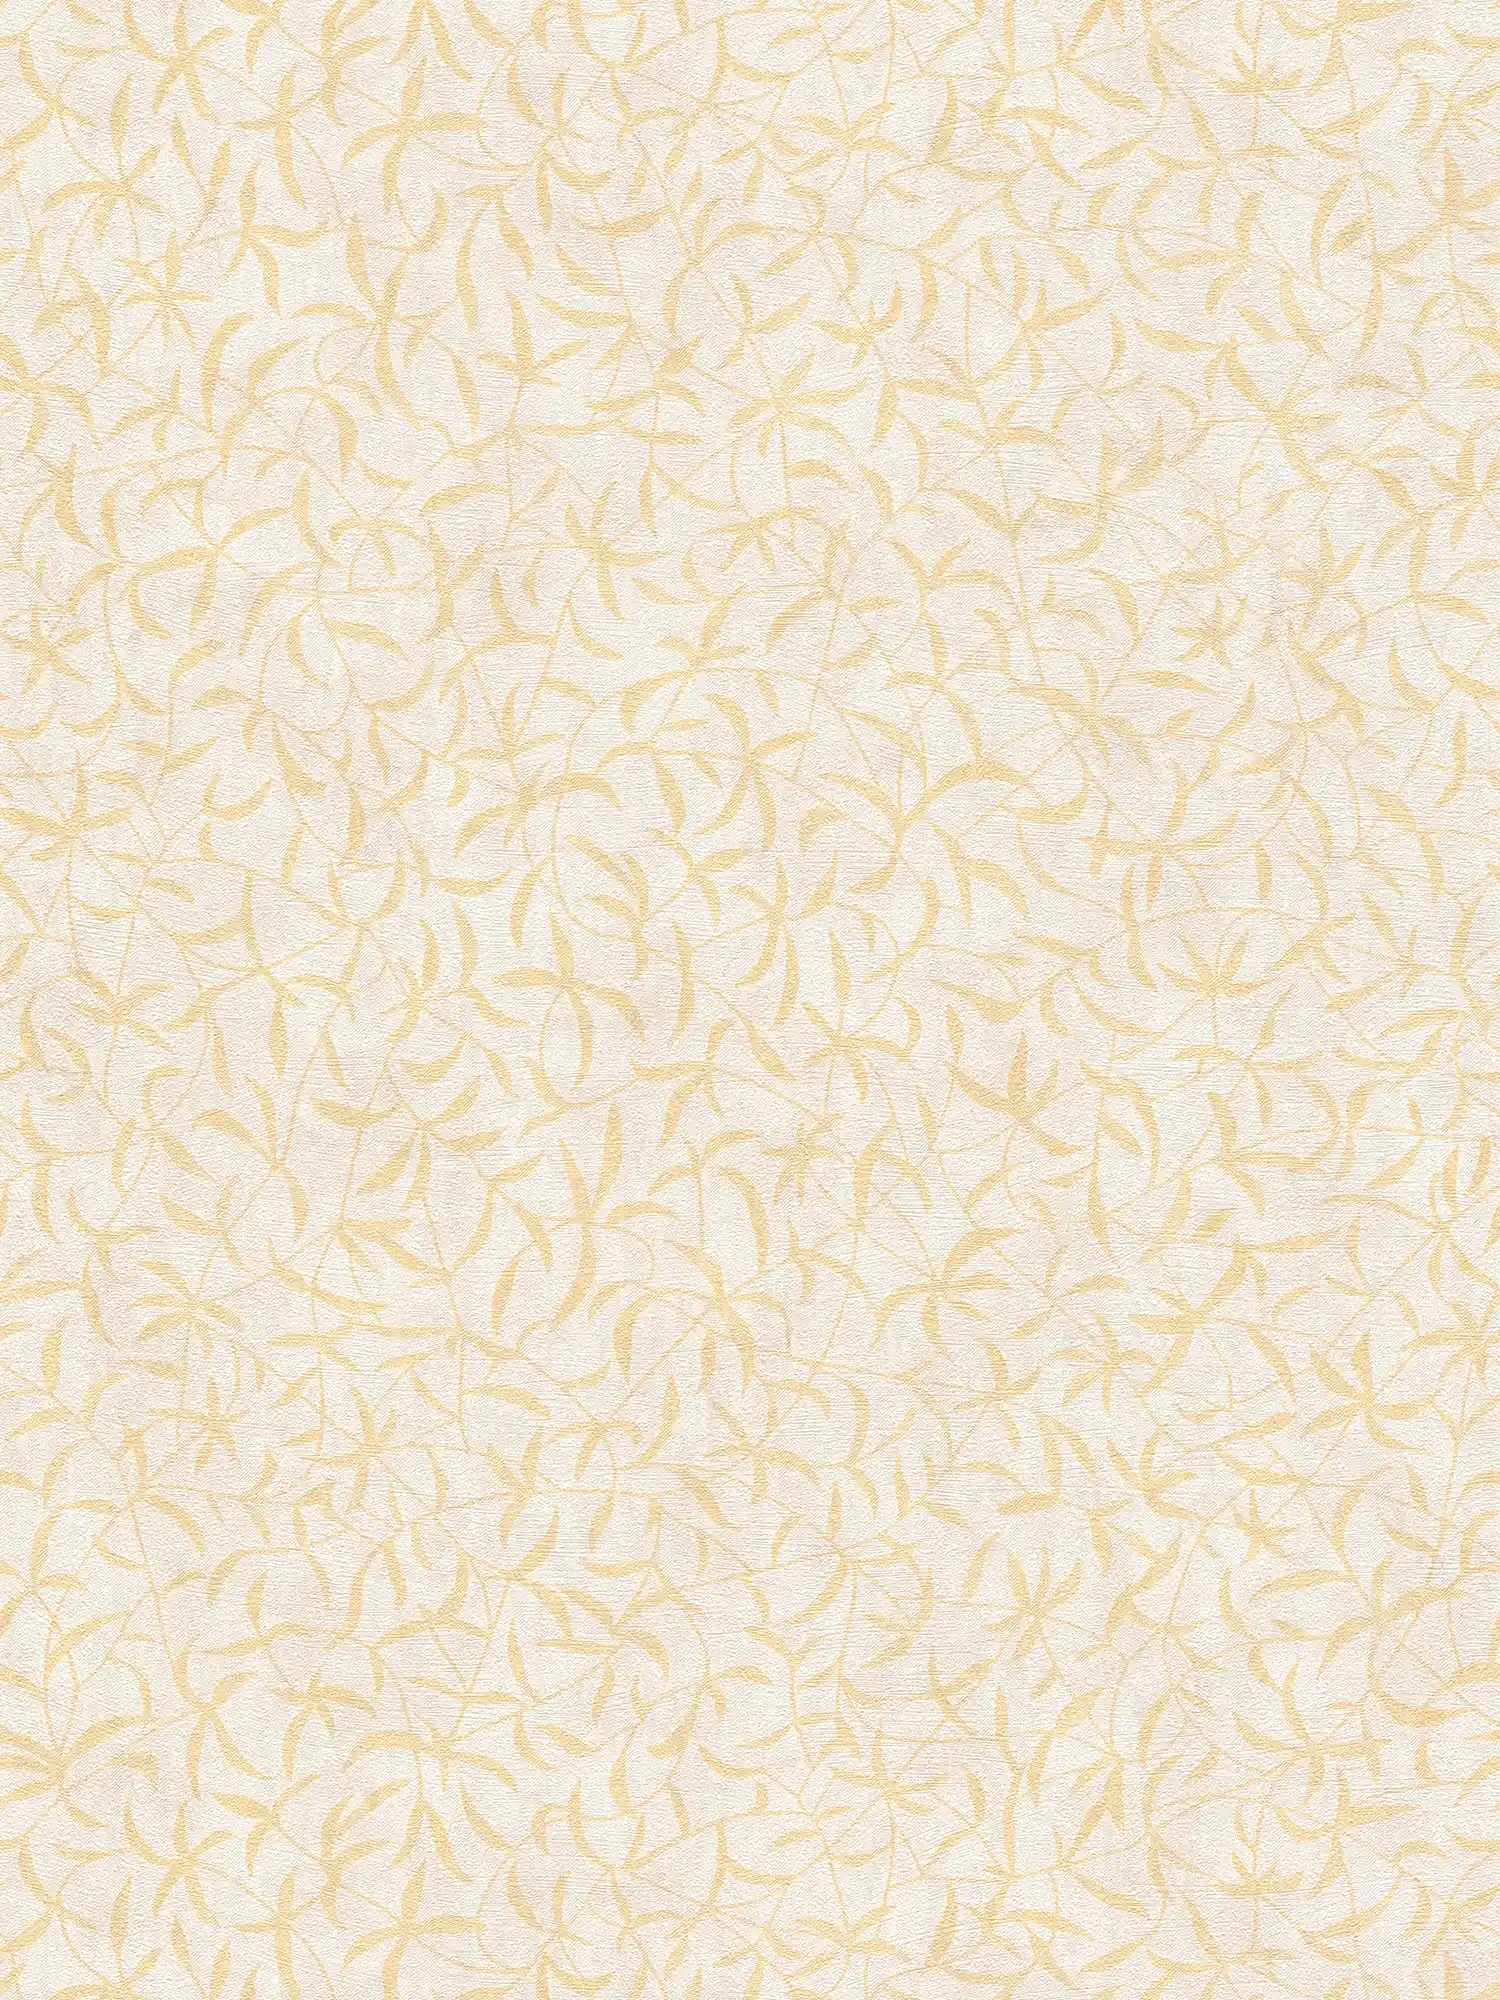 Vliesbehang met takken en bloemen - crème, beige, geel
